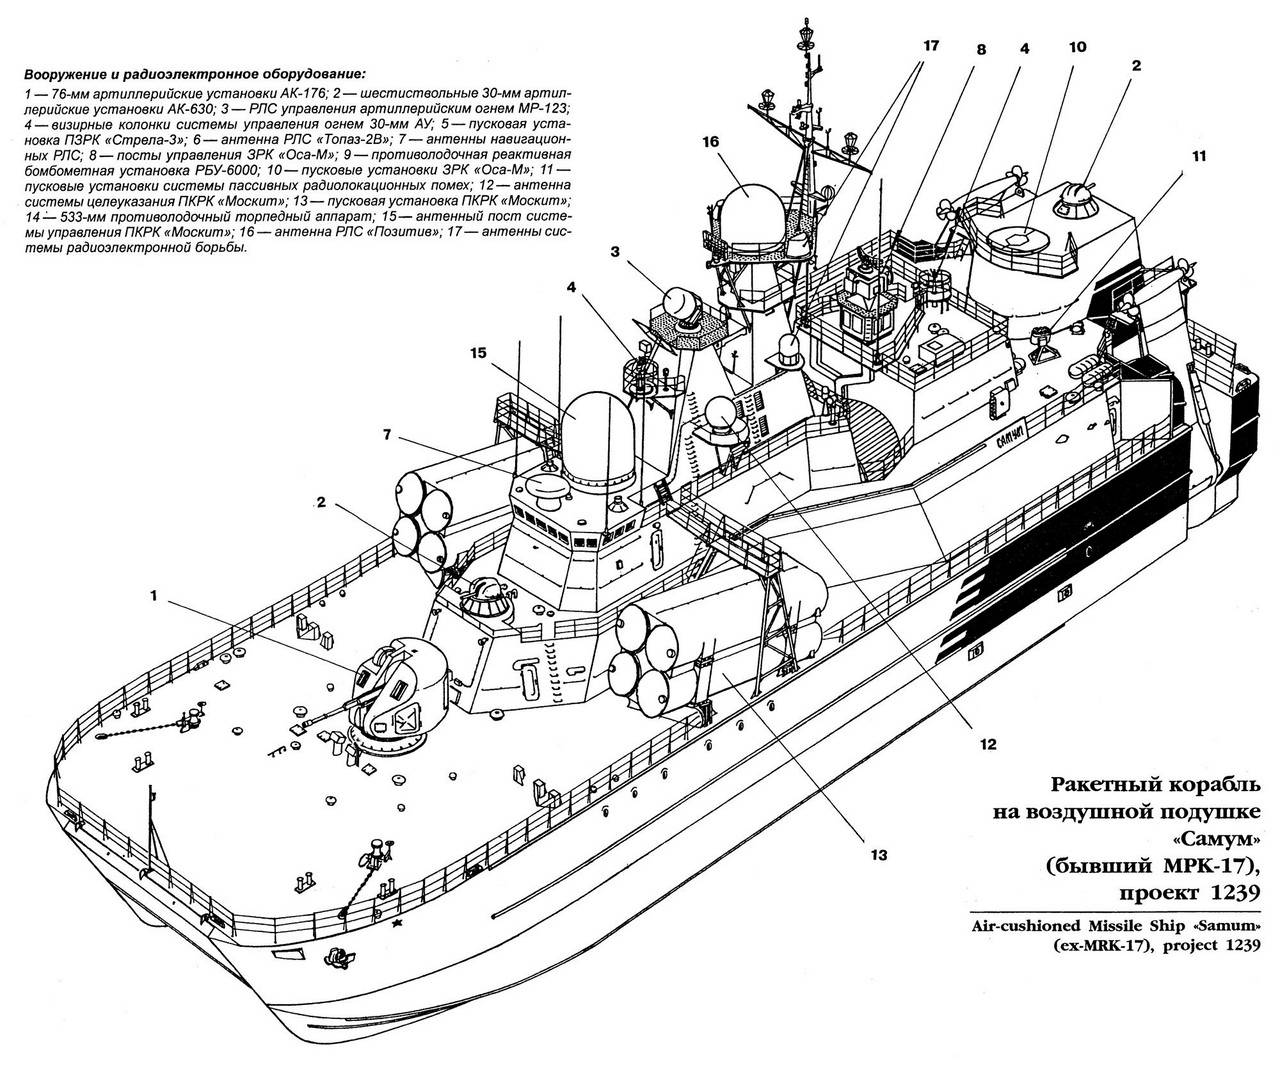 Надводные силы вмф рф ???? описание, состав, структура, задачи, корабли, праздник